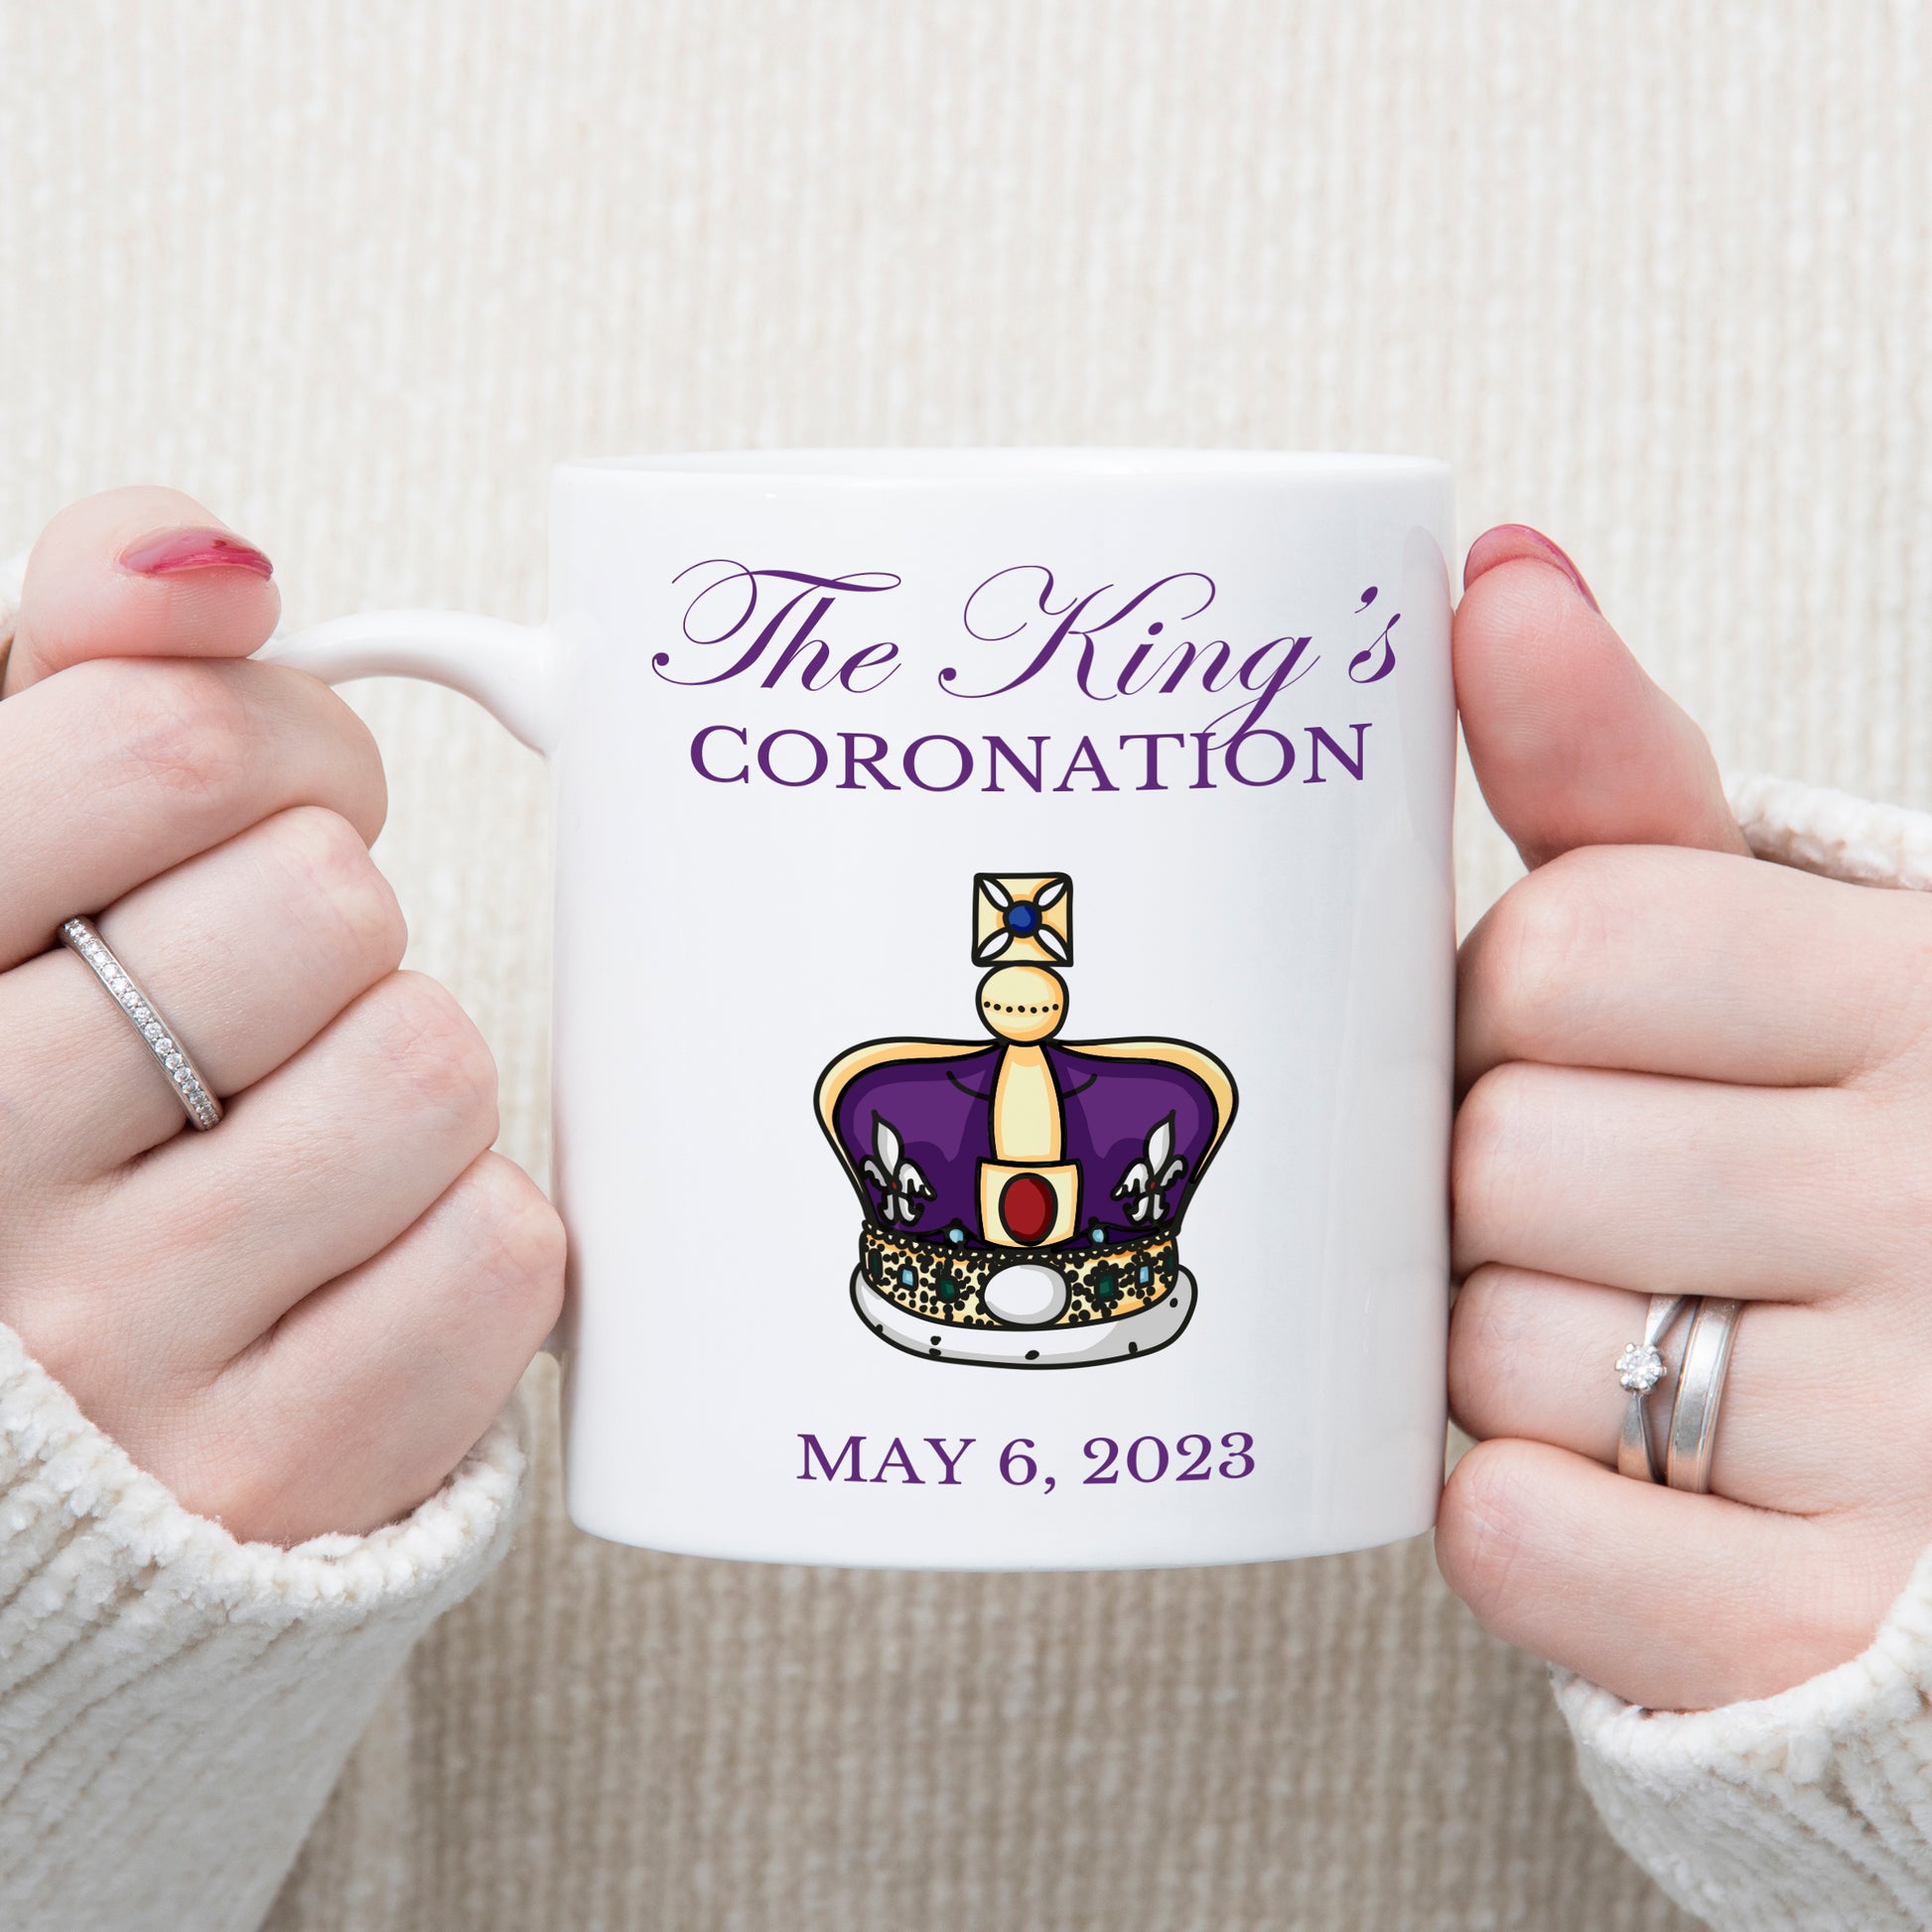 kings coronation mug 2023 king charles 3rd coronation may 2023